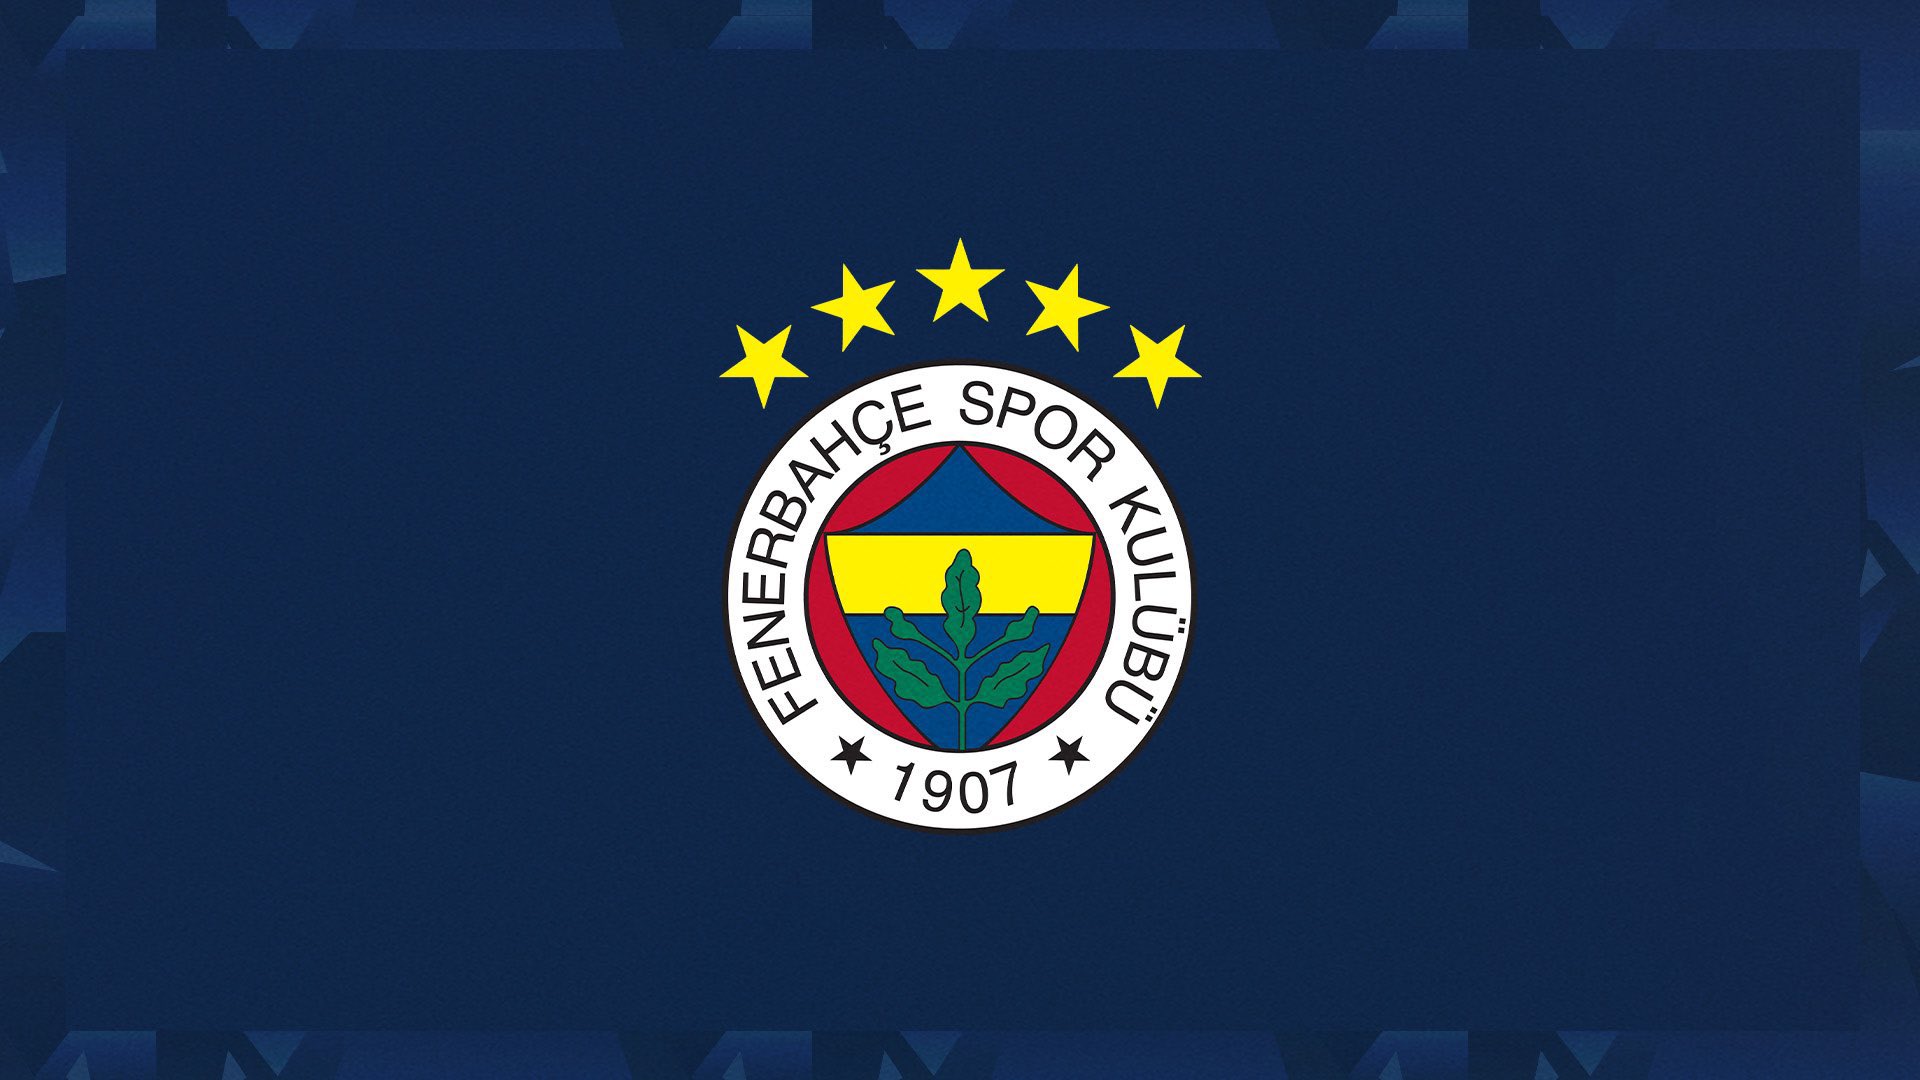 Fenerbahçe’den flaş açıklama: Ligden çekilme kararı…